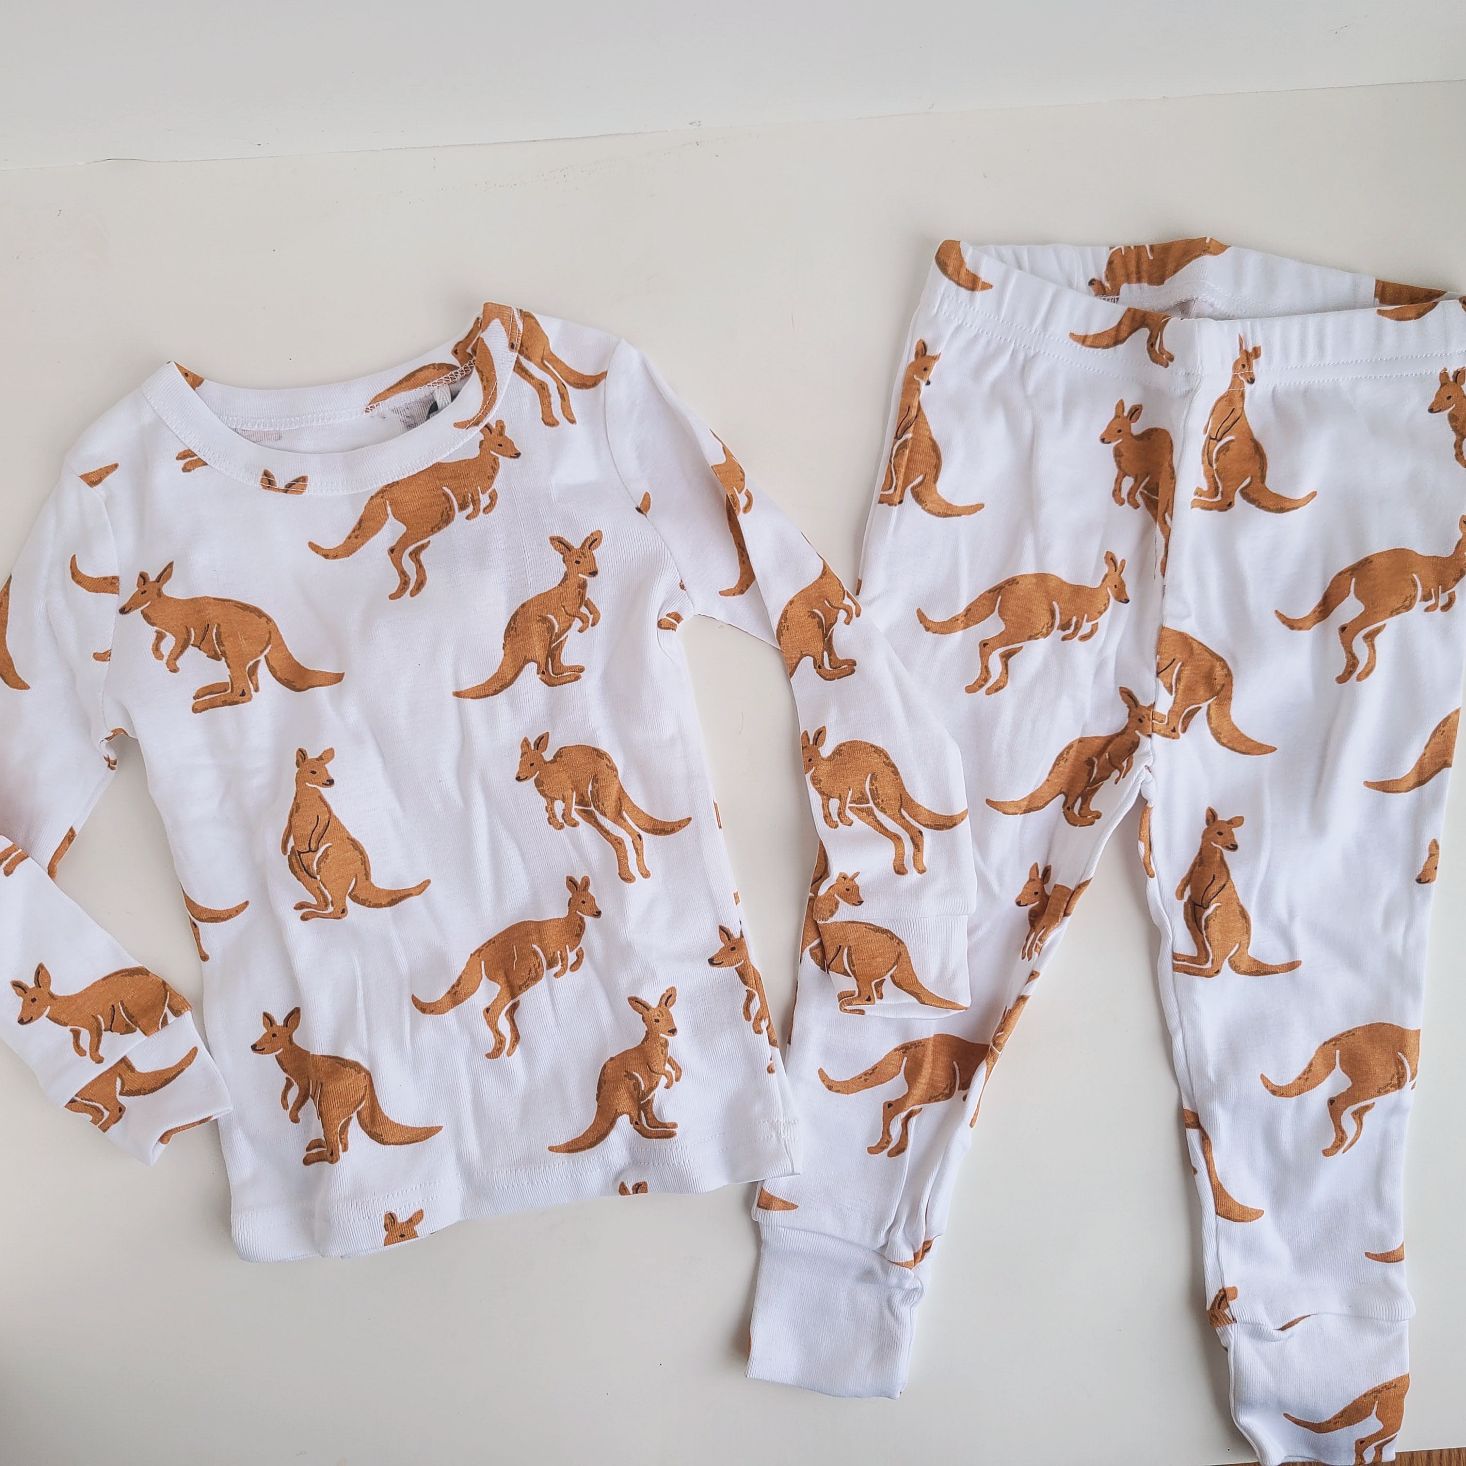 Surprisly December 2020 kangaroo pajamas